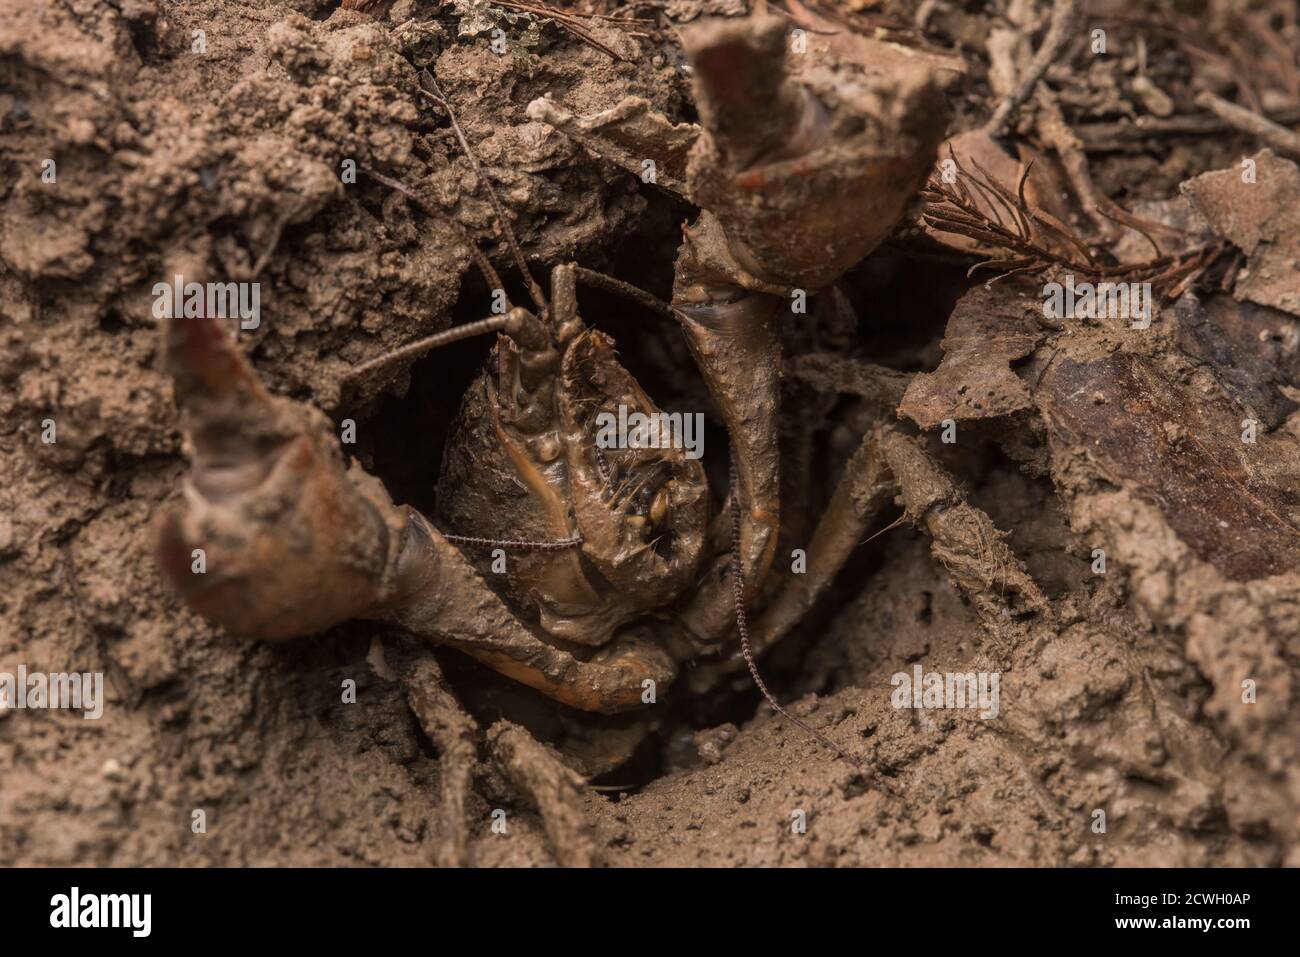 Der rote Sumpfkrebse (Procambarus clarkii), eine invasive Art in North Carolina, verteidigt seinen Bau mit Zange angehoben. Stockfoto